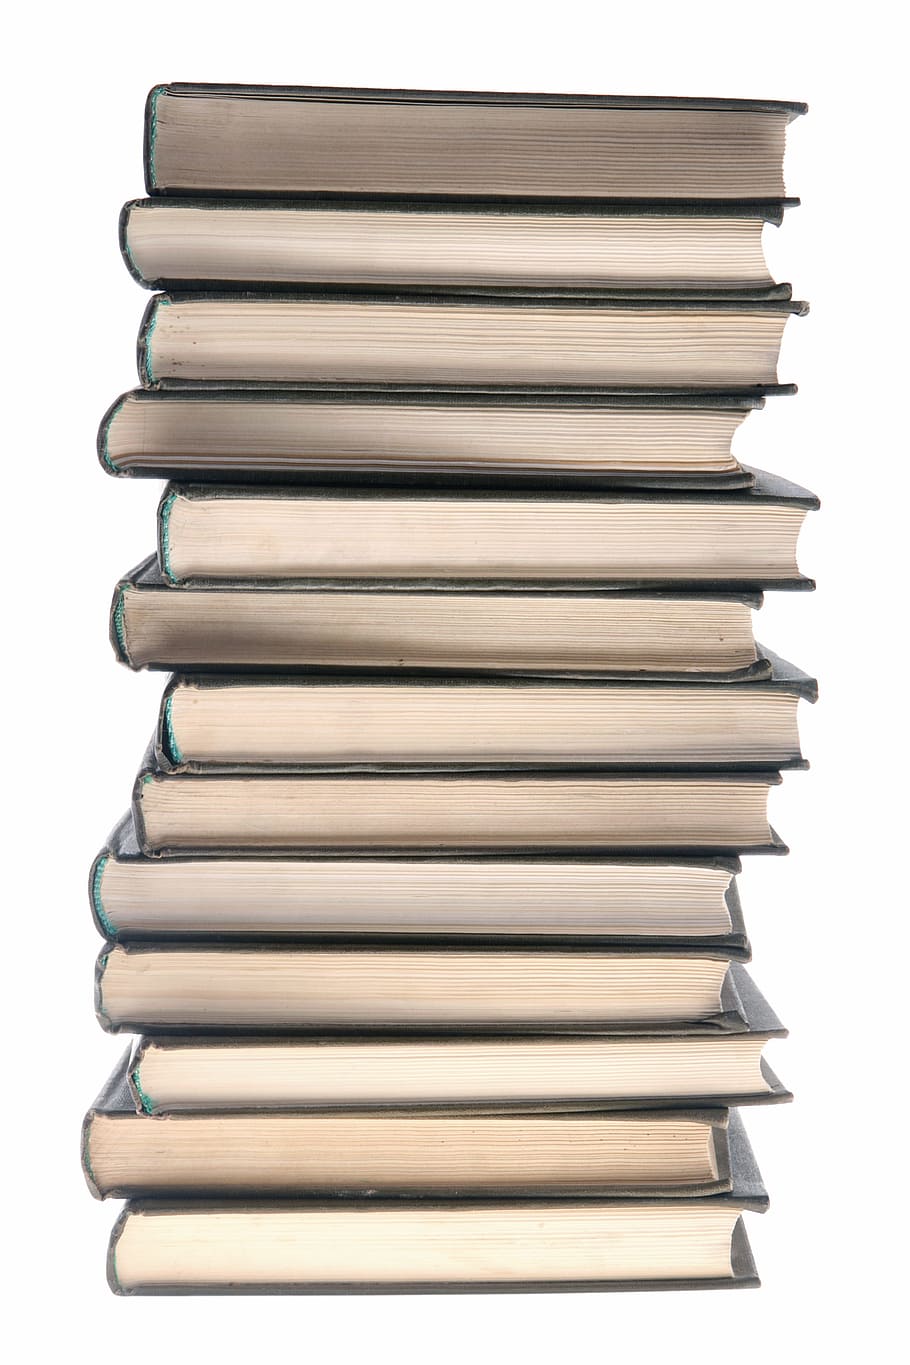 libro, libros, educación, enciclopedia, montón, información, aislado, conocimiento, literatura, pila